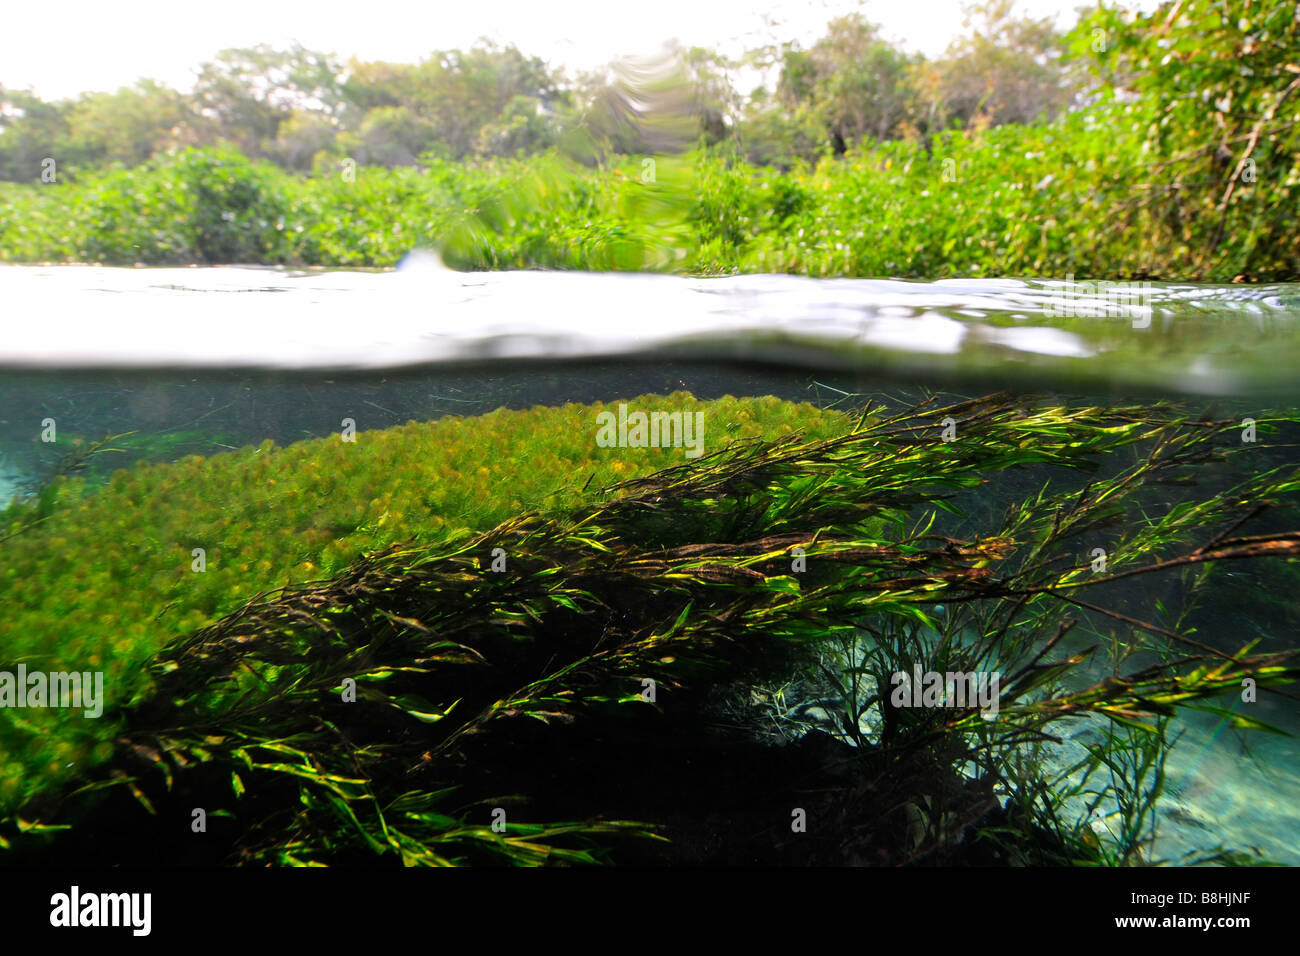 Image fractionnée de la luxuriante végétation au-dessus et ci-dessous l'eau, fleuve Sucuri, bonite, Mato Grosso do Sul, Brésil Banque D'Images